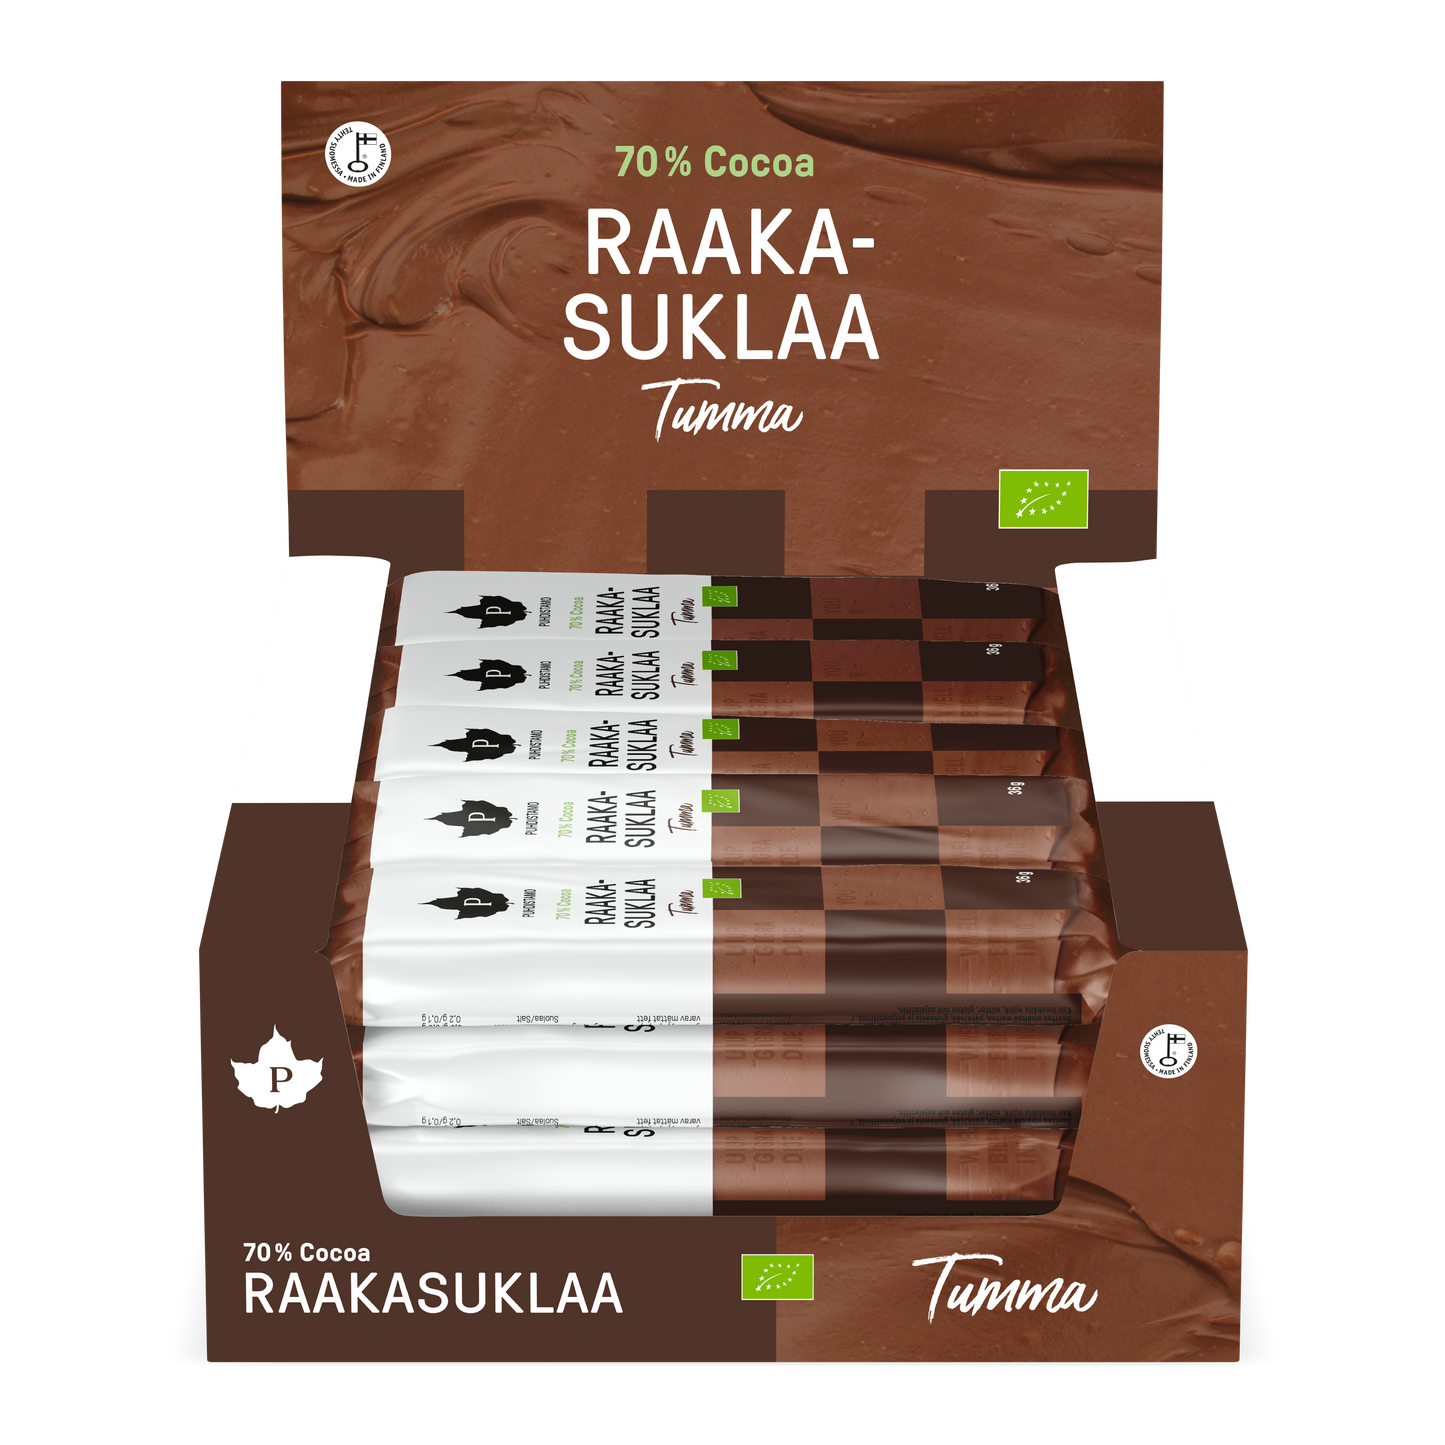 Puhdistamo Raakasuklaa Tumma - 24 pack - w2w terveys ja hyvinvointi